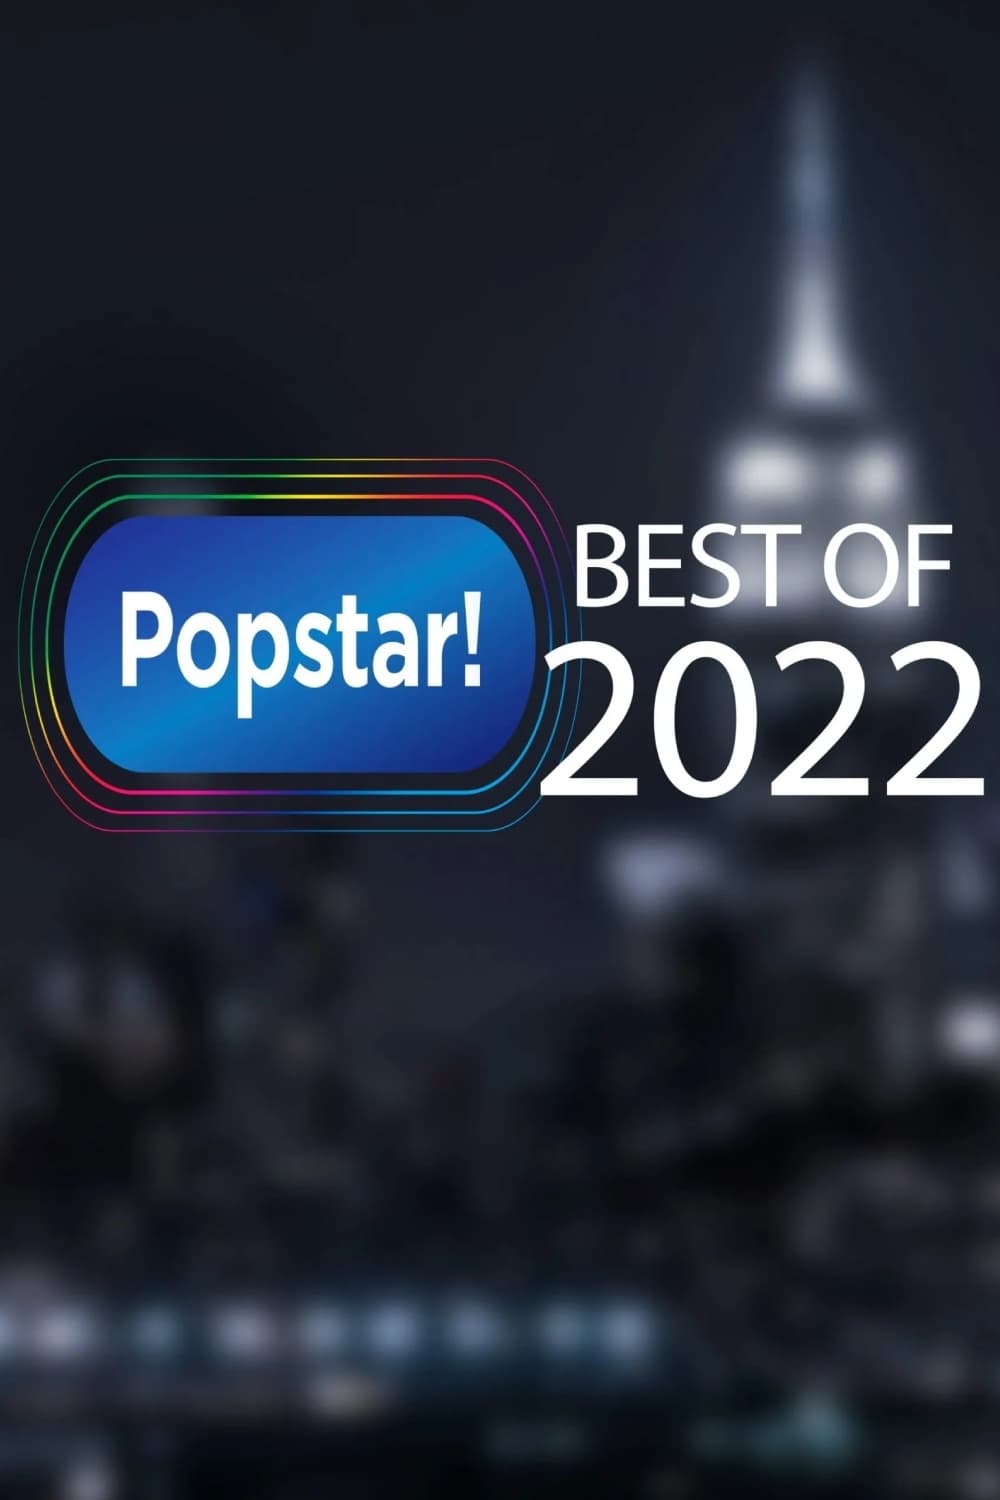 Popstar's Best of 2022